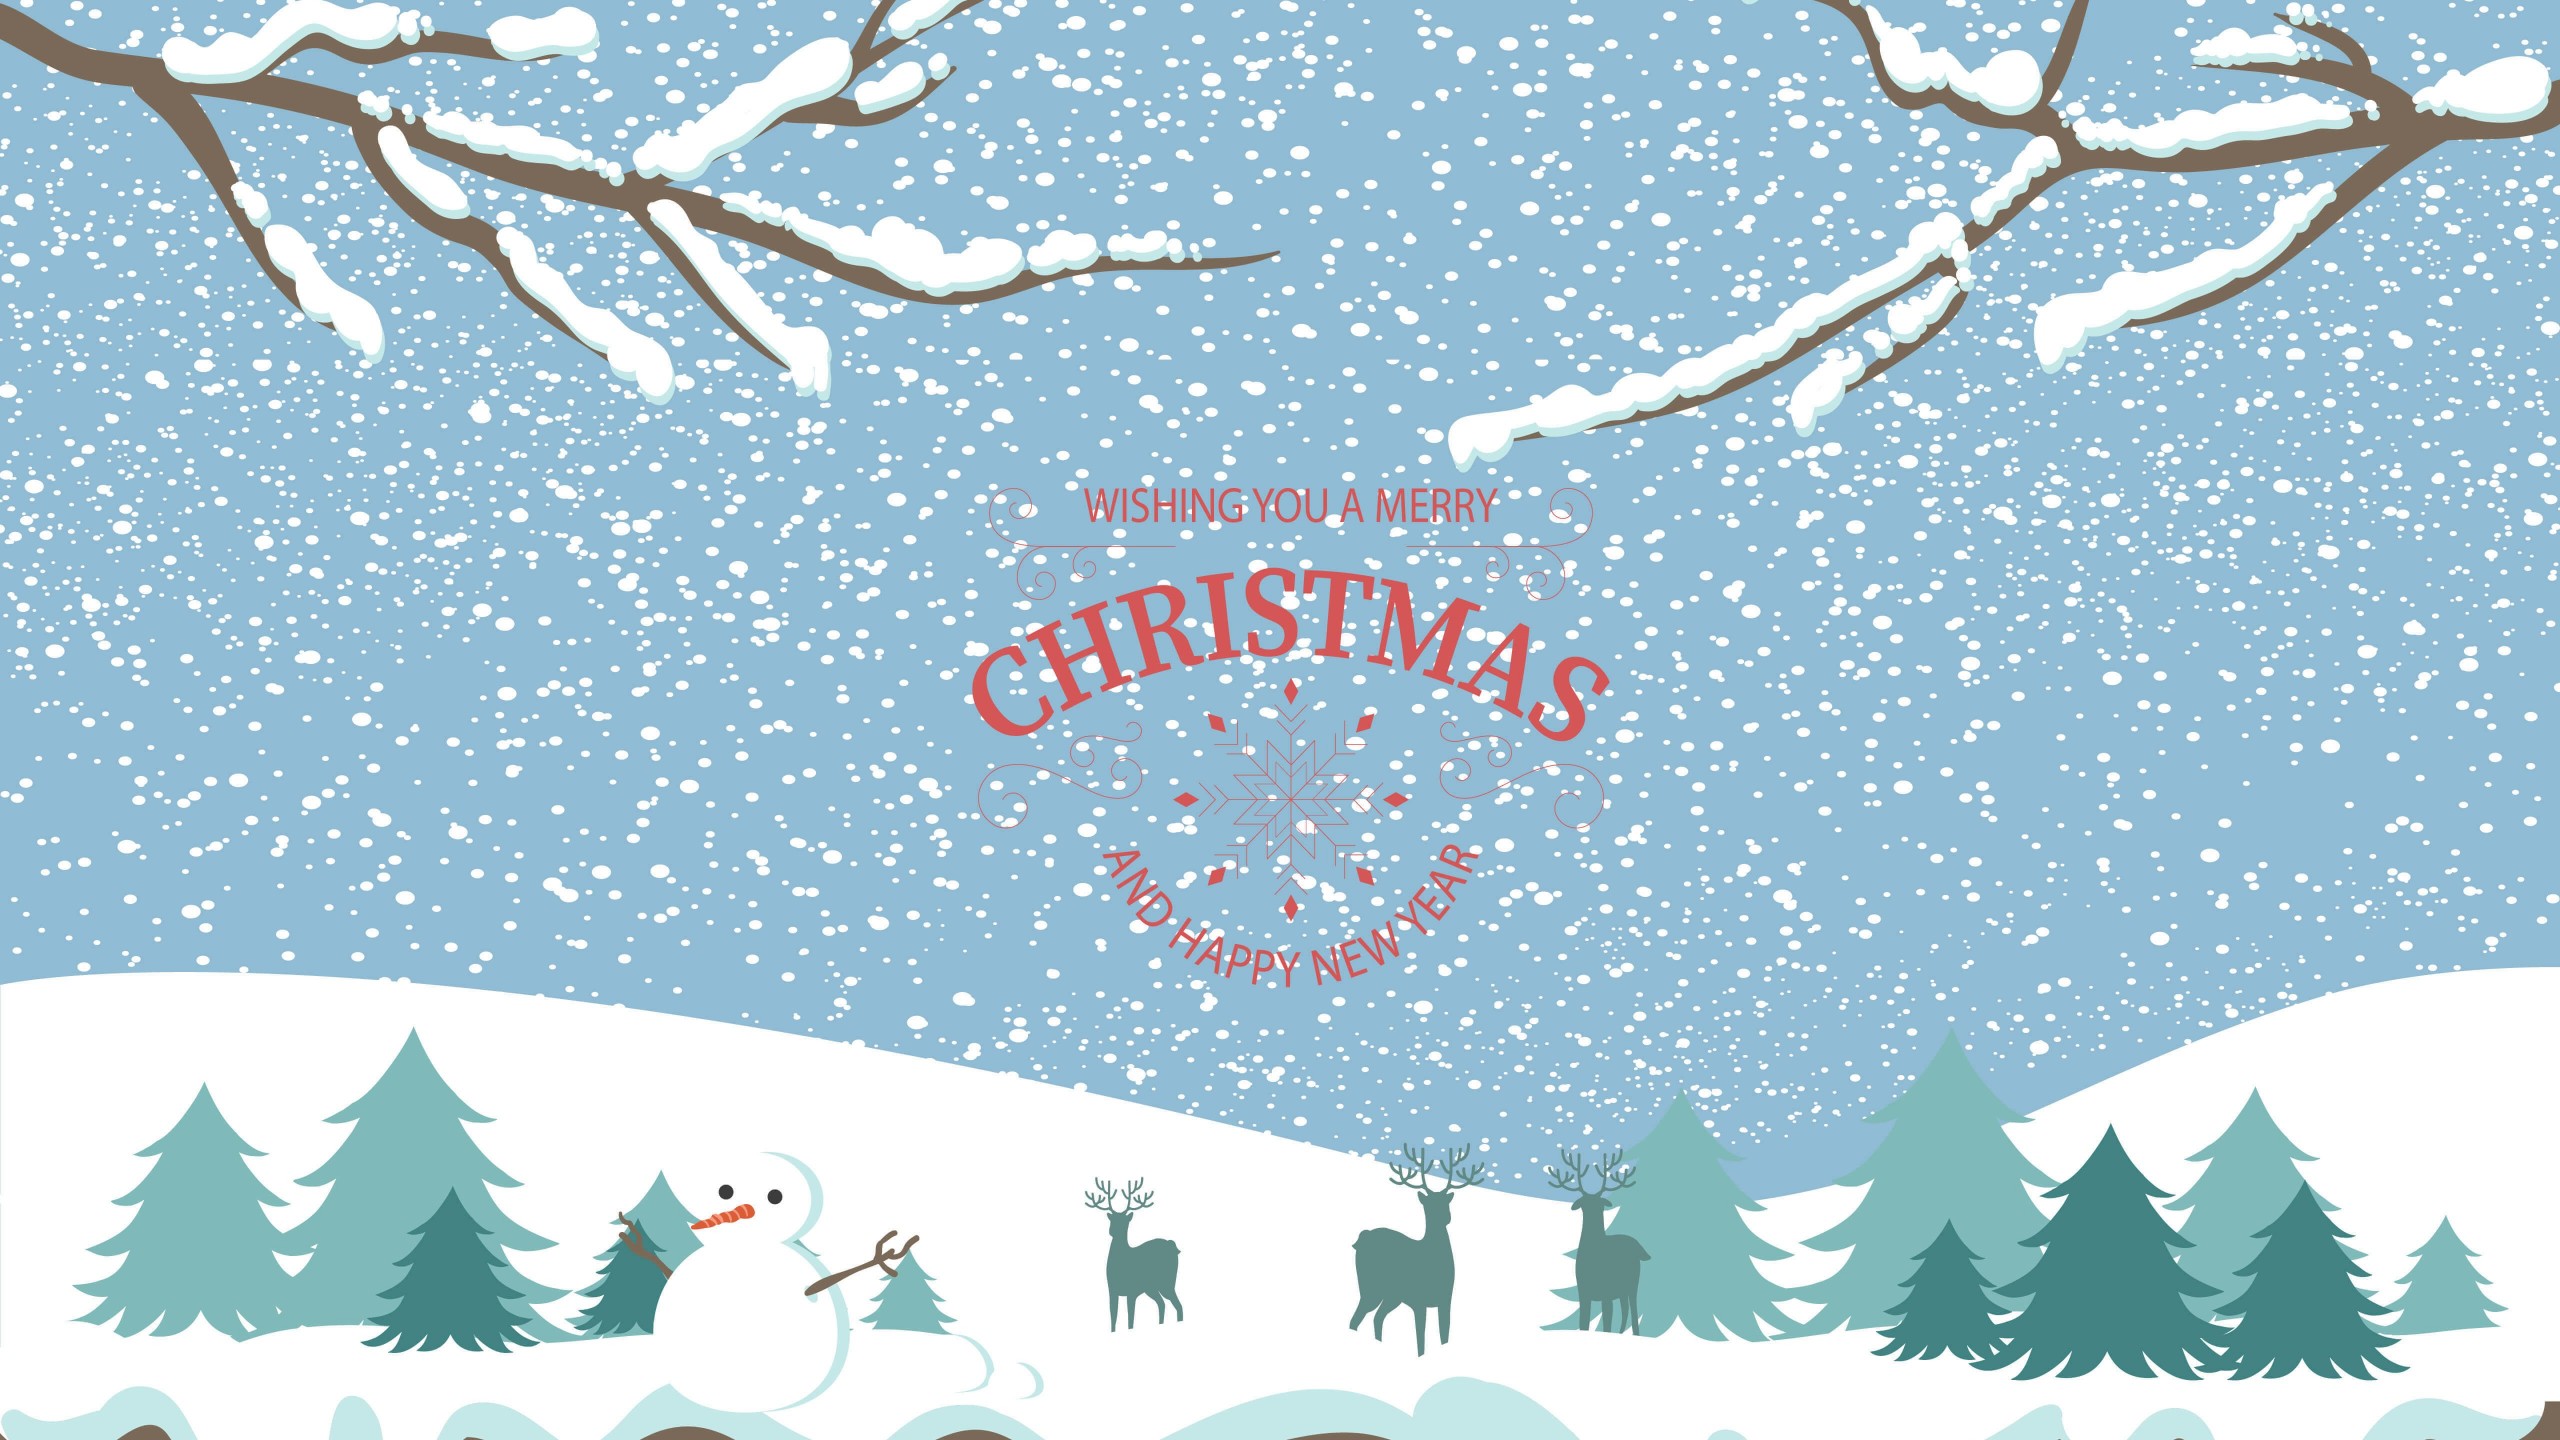 Merry Christmas Illustration Wallpaper for Desktop 2560x1440